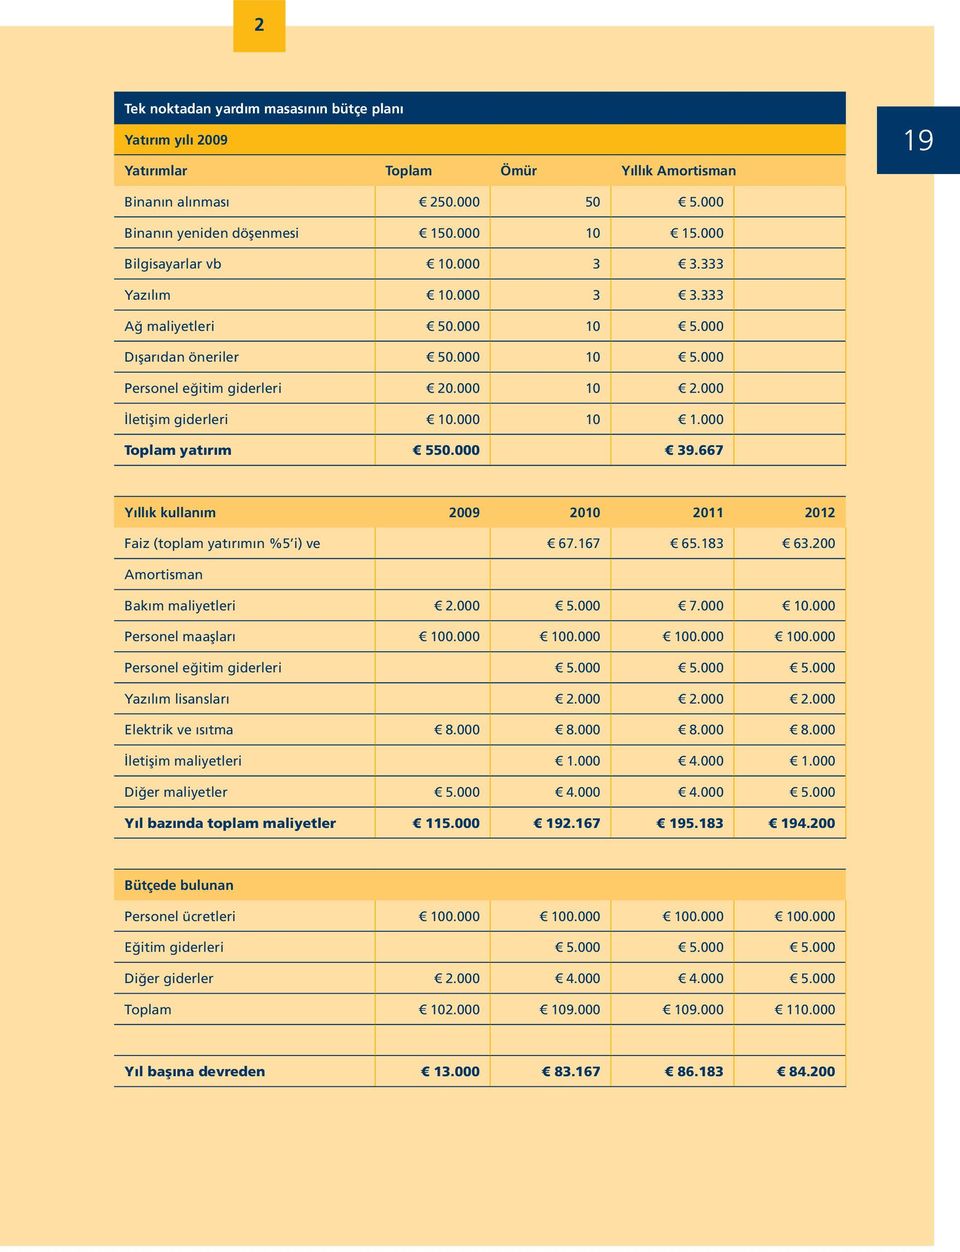 000 Toplam yatırım 550.000 39.667 Yıllık kullanım 2009 2010 2011 2012 Faiz (toplam yatırımın %5 i) ve 67.167 65.183 63.200 Amortisman Bakım maliyetleri 2.000 5.000 7.000 10.000 Personel maaşları 100.